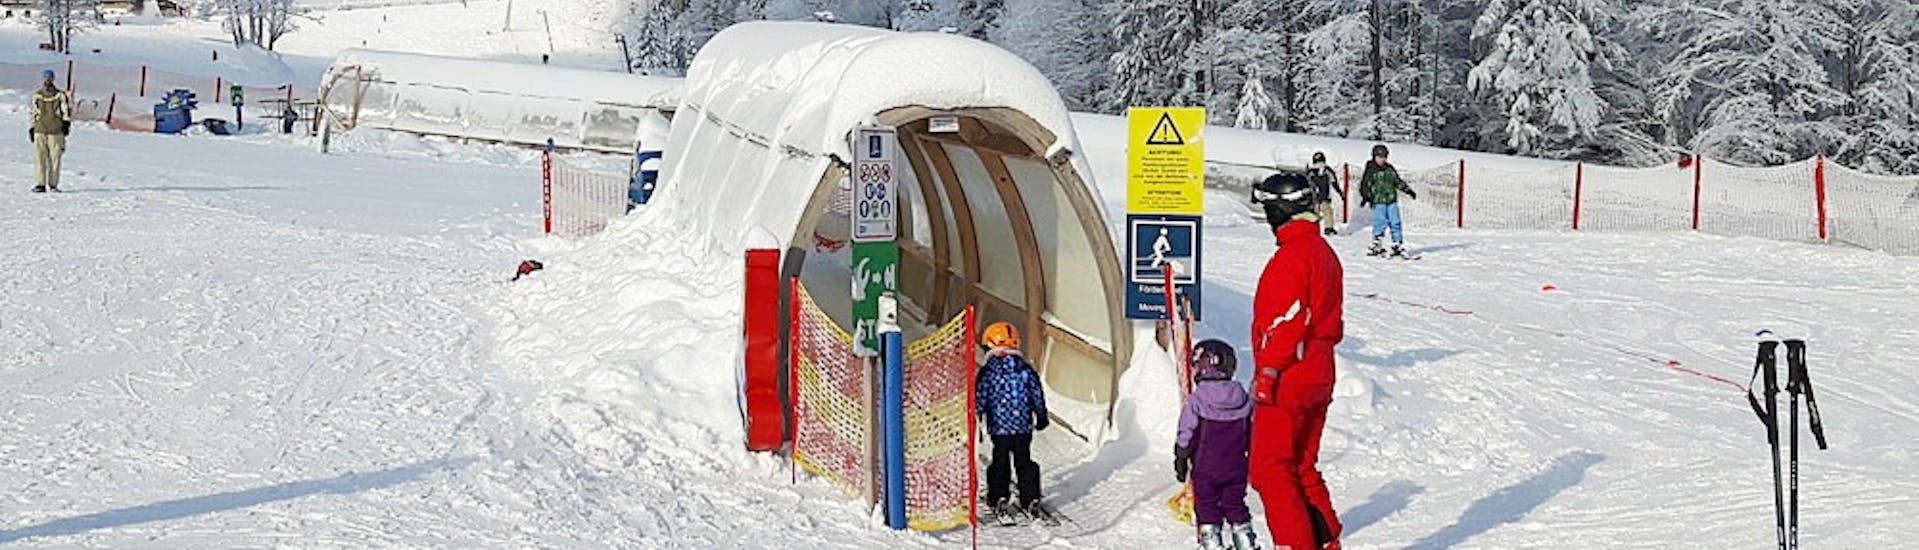 Les enfants prennent le tapis magique pendant les cours particuliers de ski pour enfants de tous niveaux de G&S snowsportschool Mitterdorf.